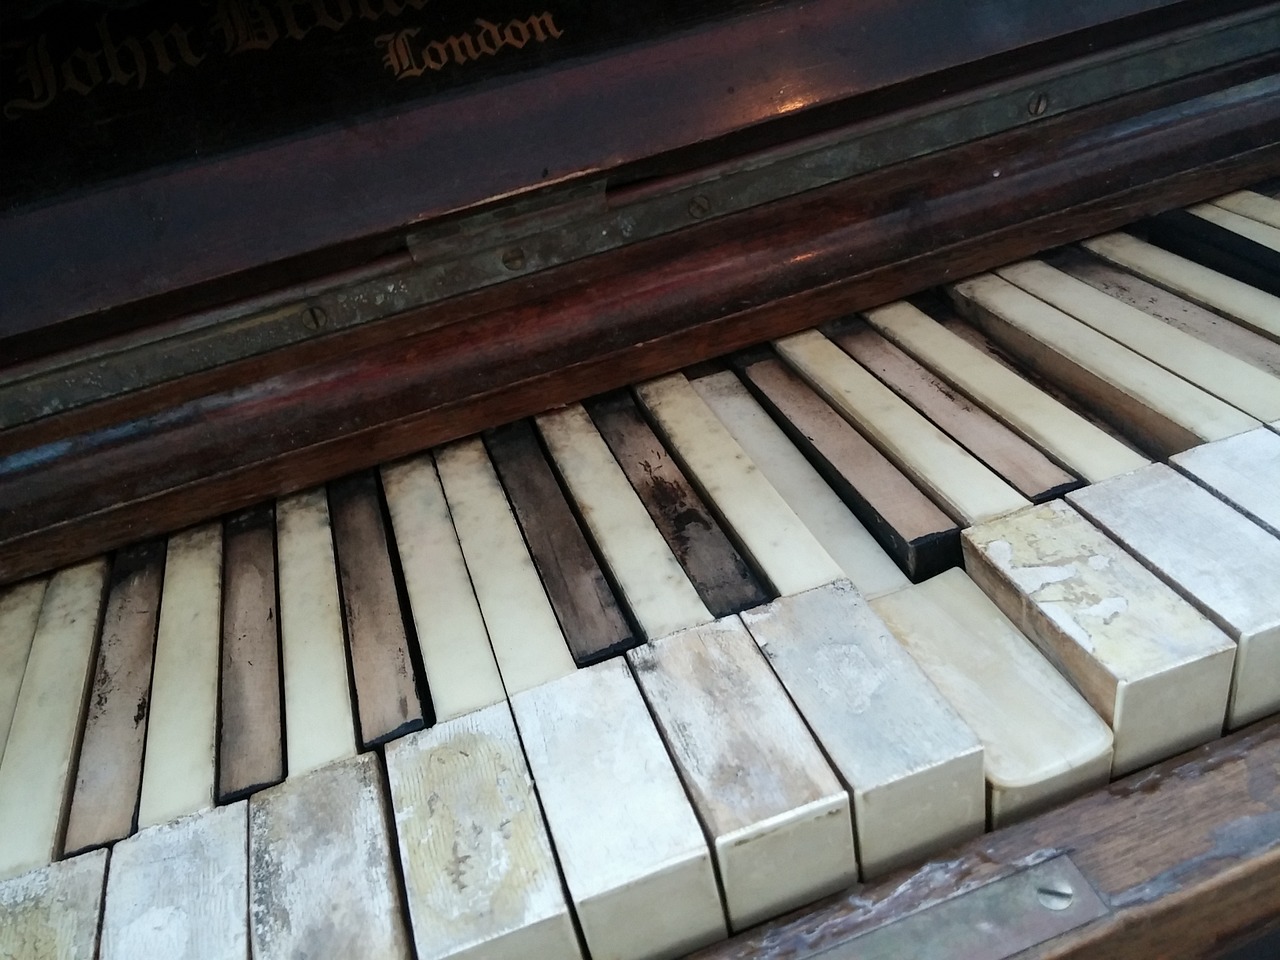 piano keys ebony free photo